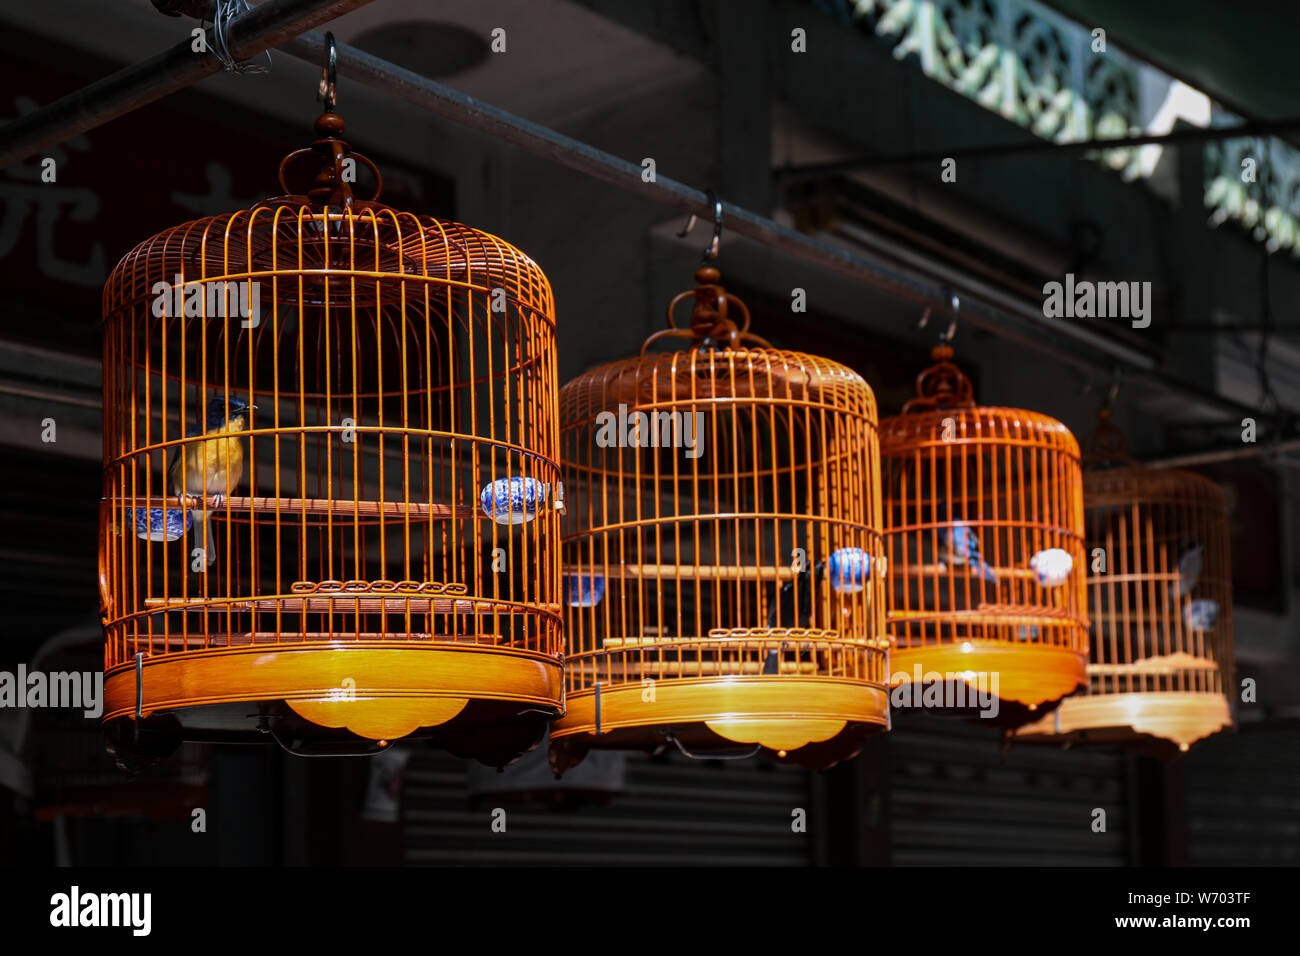 Bamboo bird cages at Yuen Po Street Bird Garden in Mong Kok, Hong Kong Stock Photo